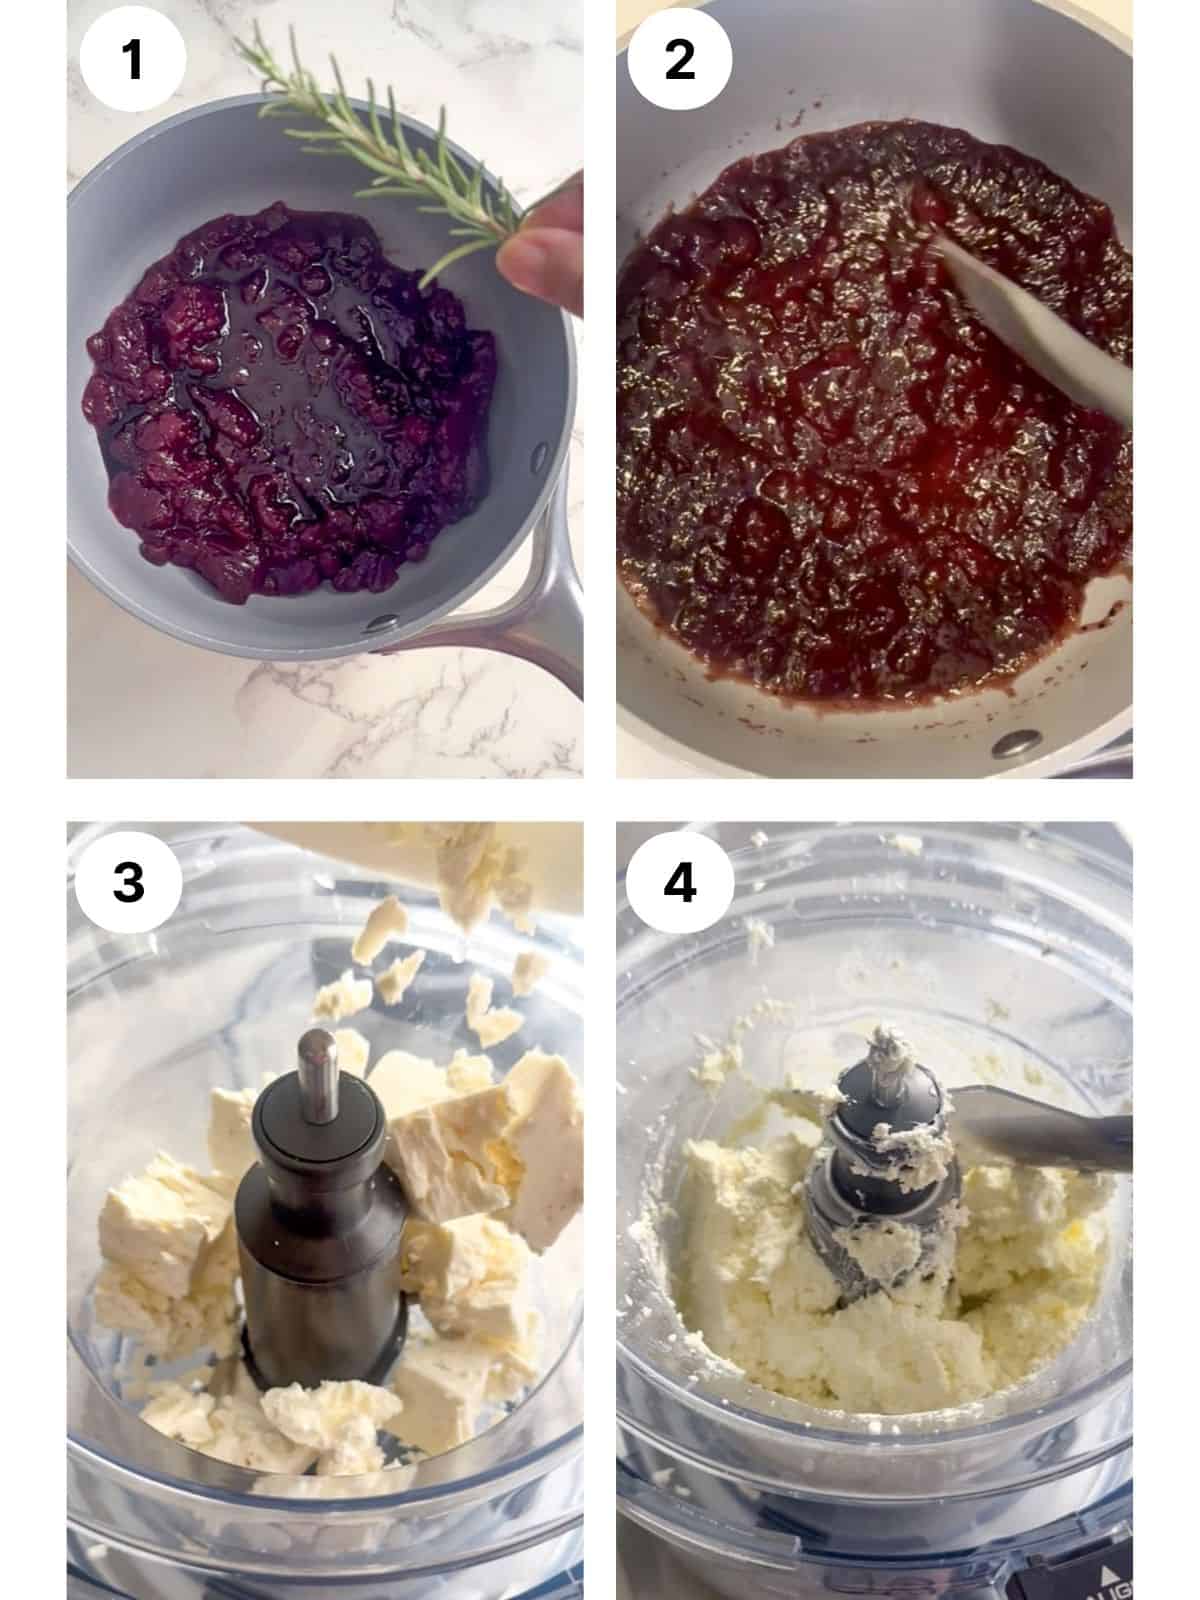 Process photos for recipe steps 1 through 4.